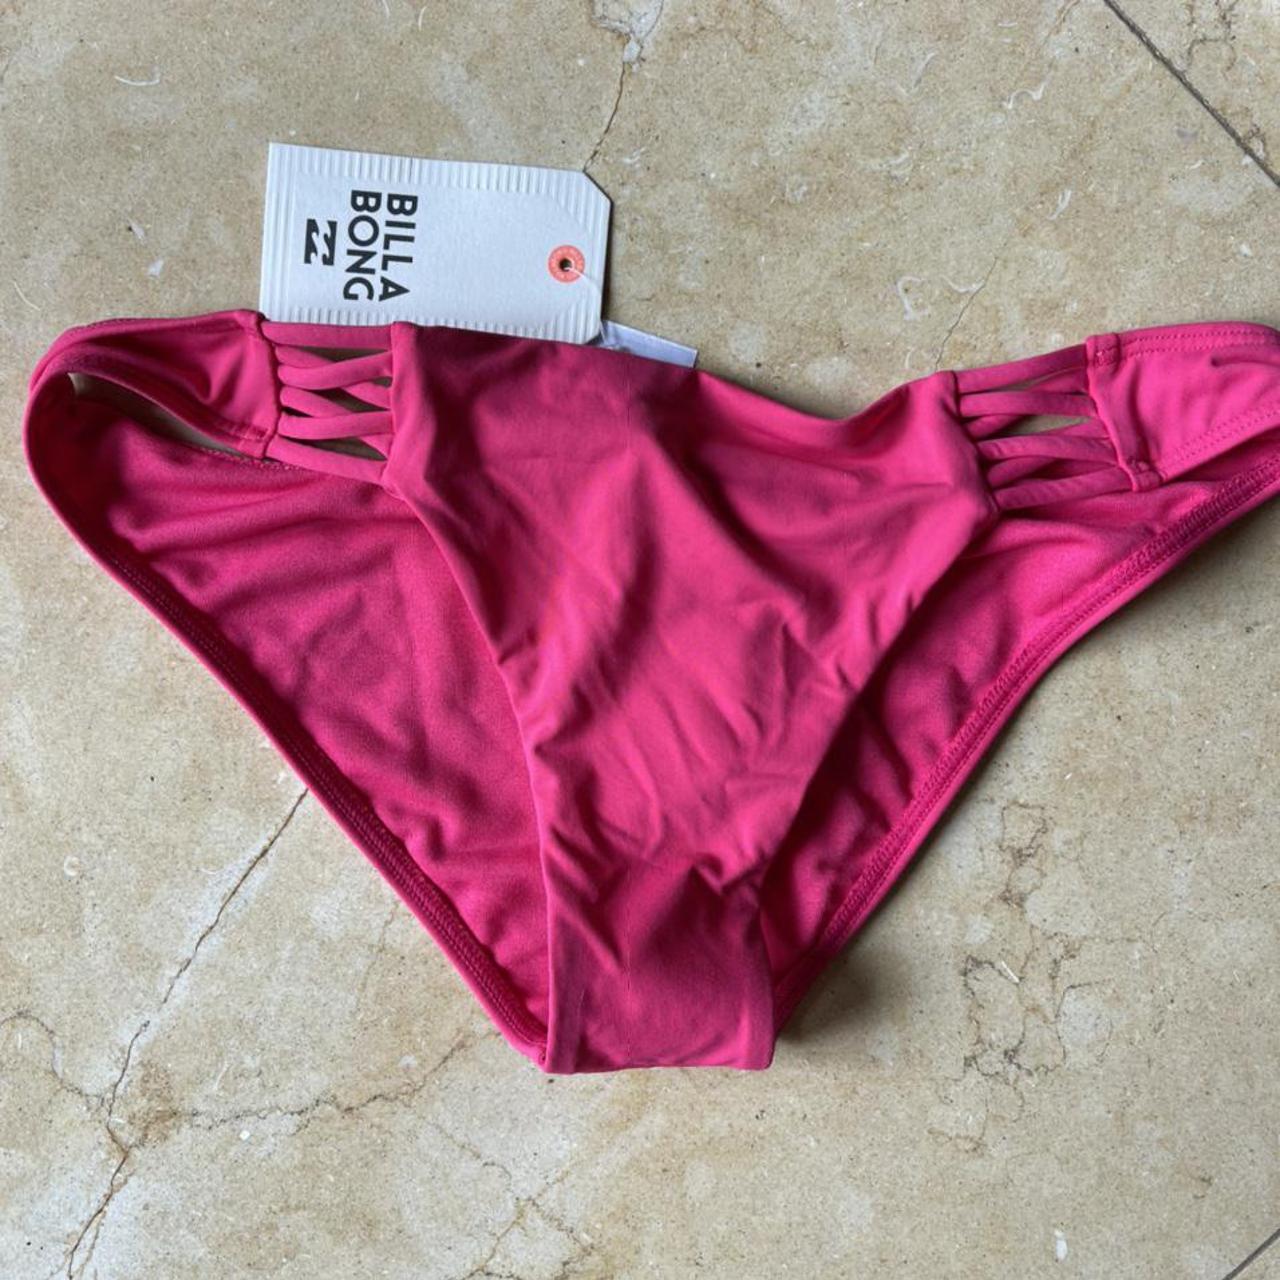 Billabong pink brand new bikini W tags Super... - Depop